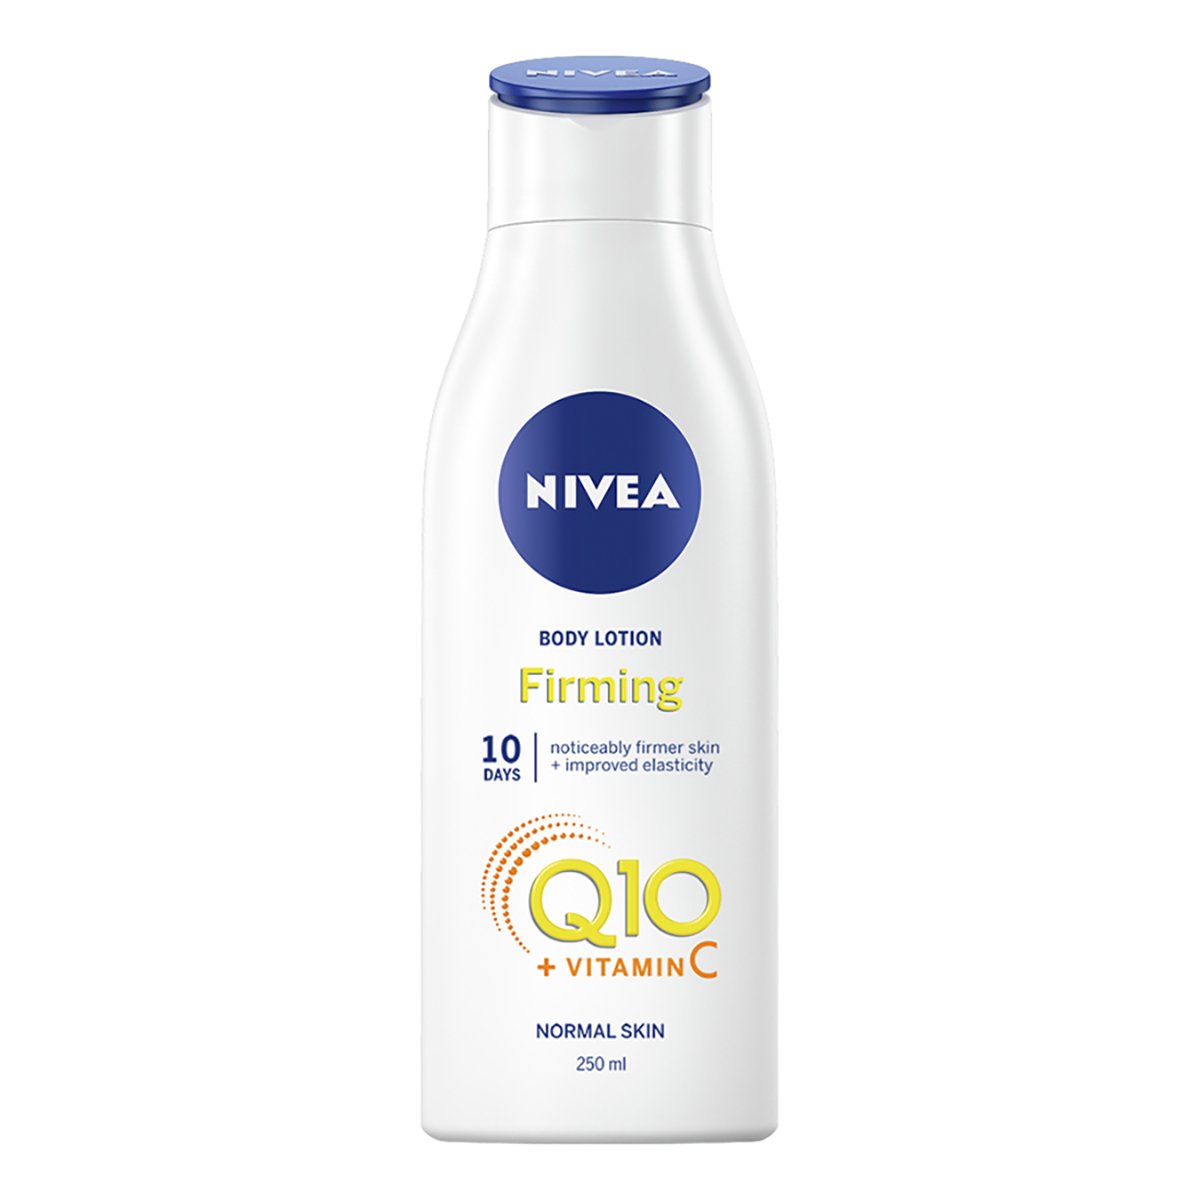 Lotiune pentru fermitate Nivea Q10 + vitamina C, 250 ml Nivea